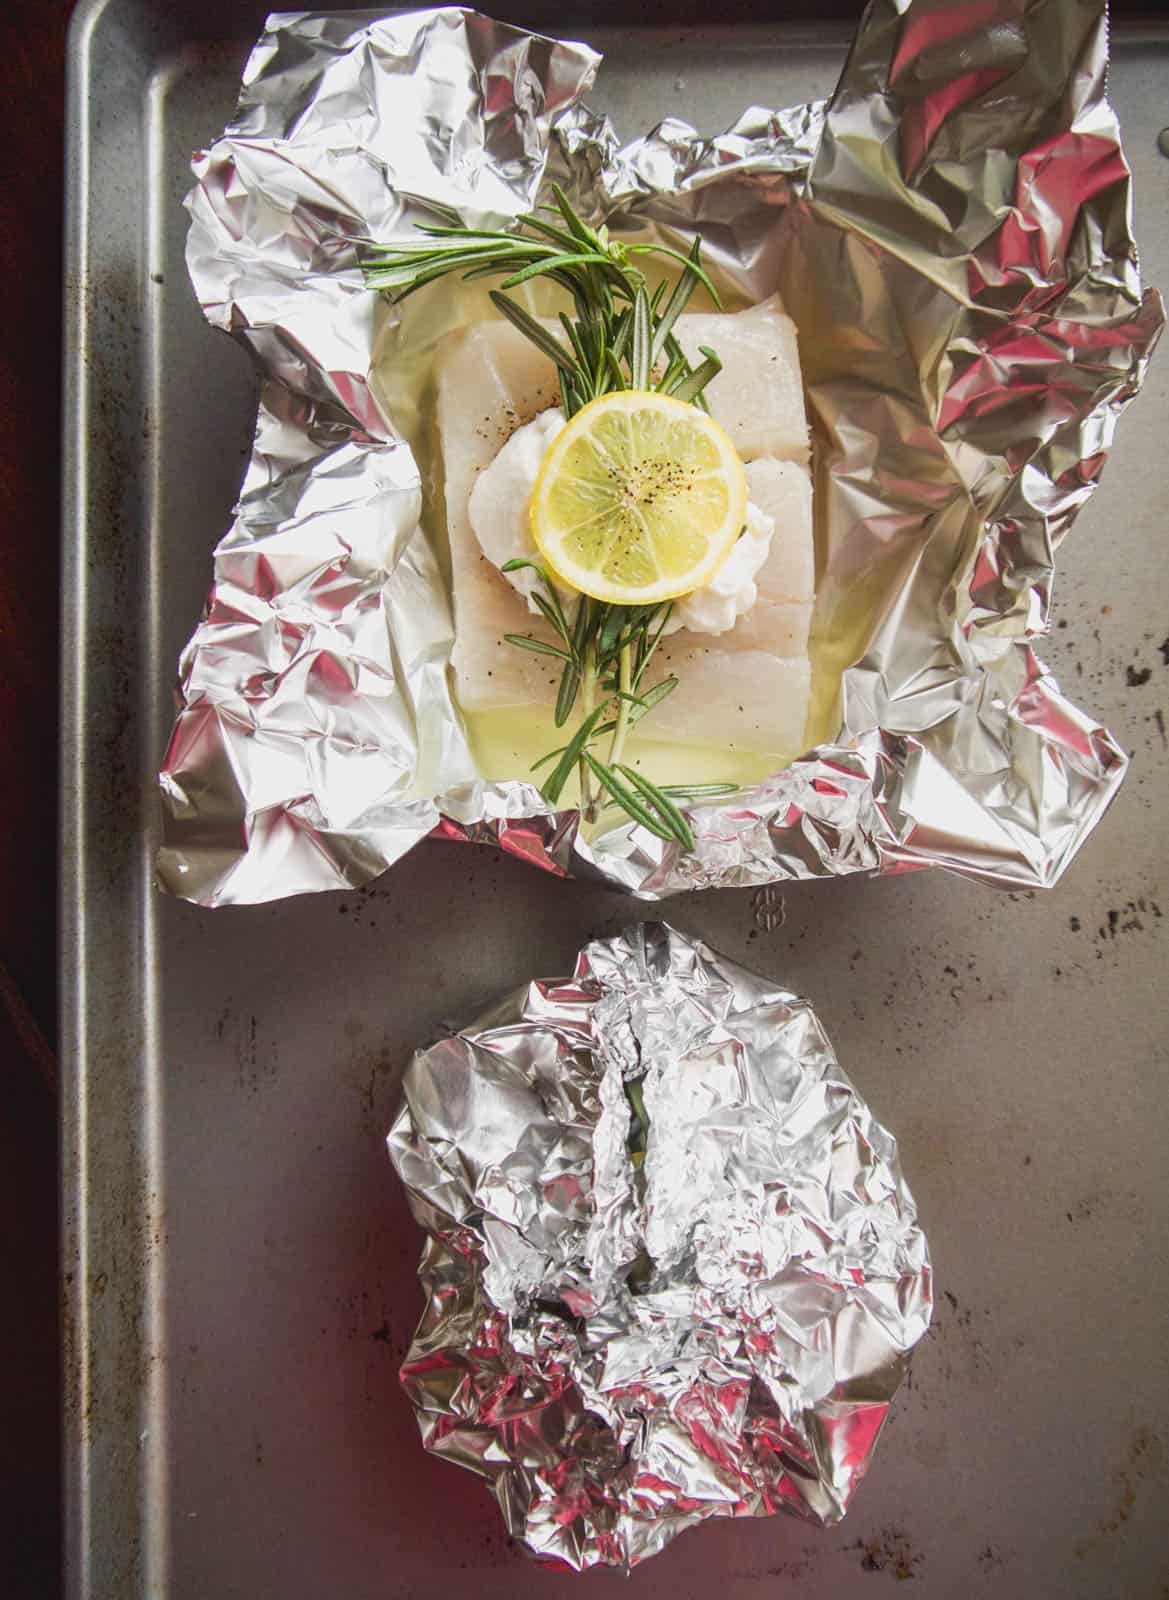 Fish foil packs before baking.